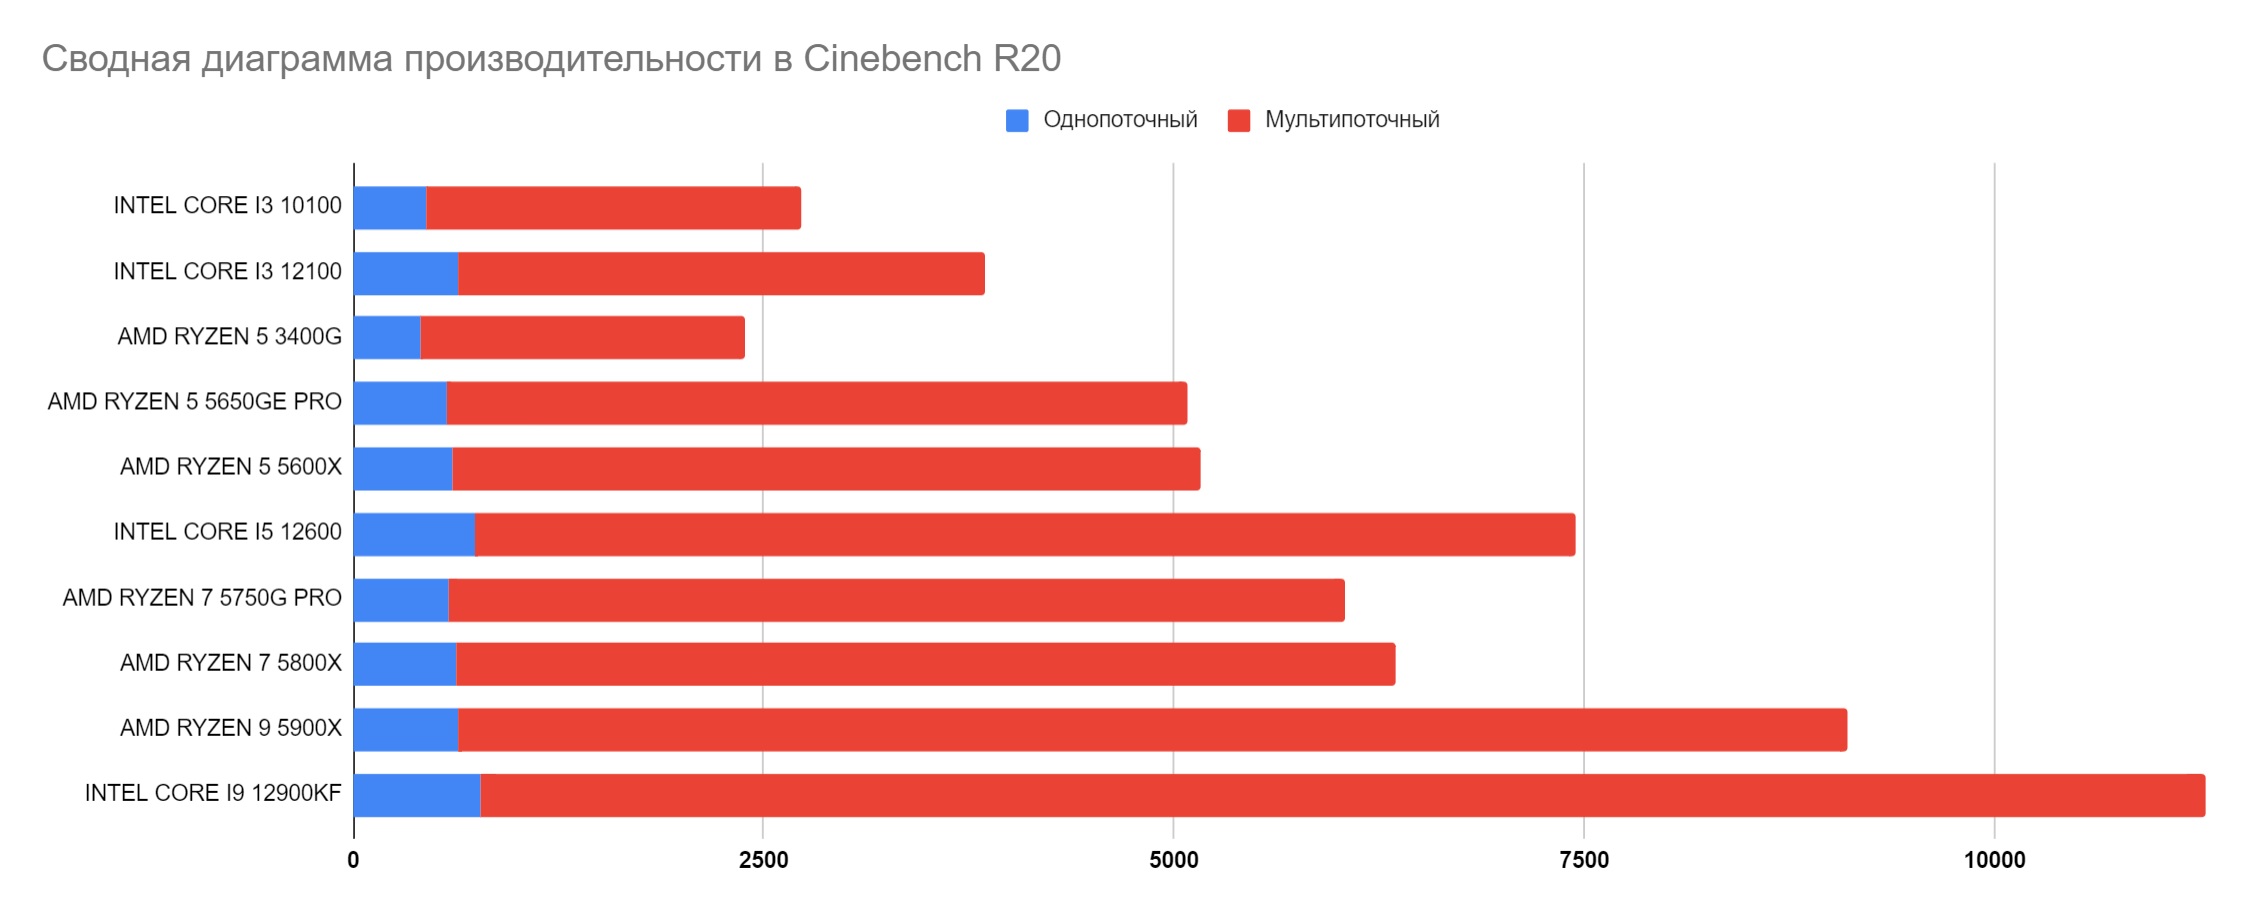 Таблица производительности процессоров в Cinebench R20 